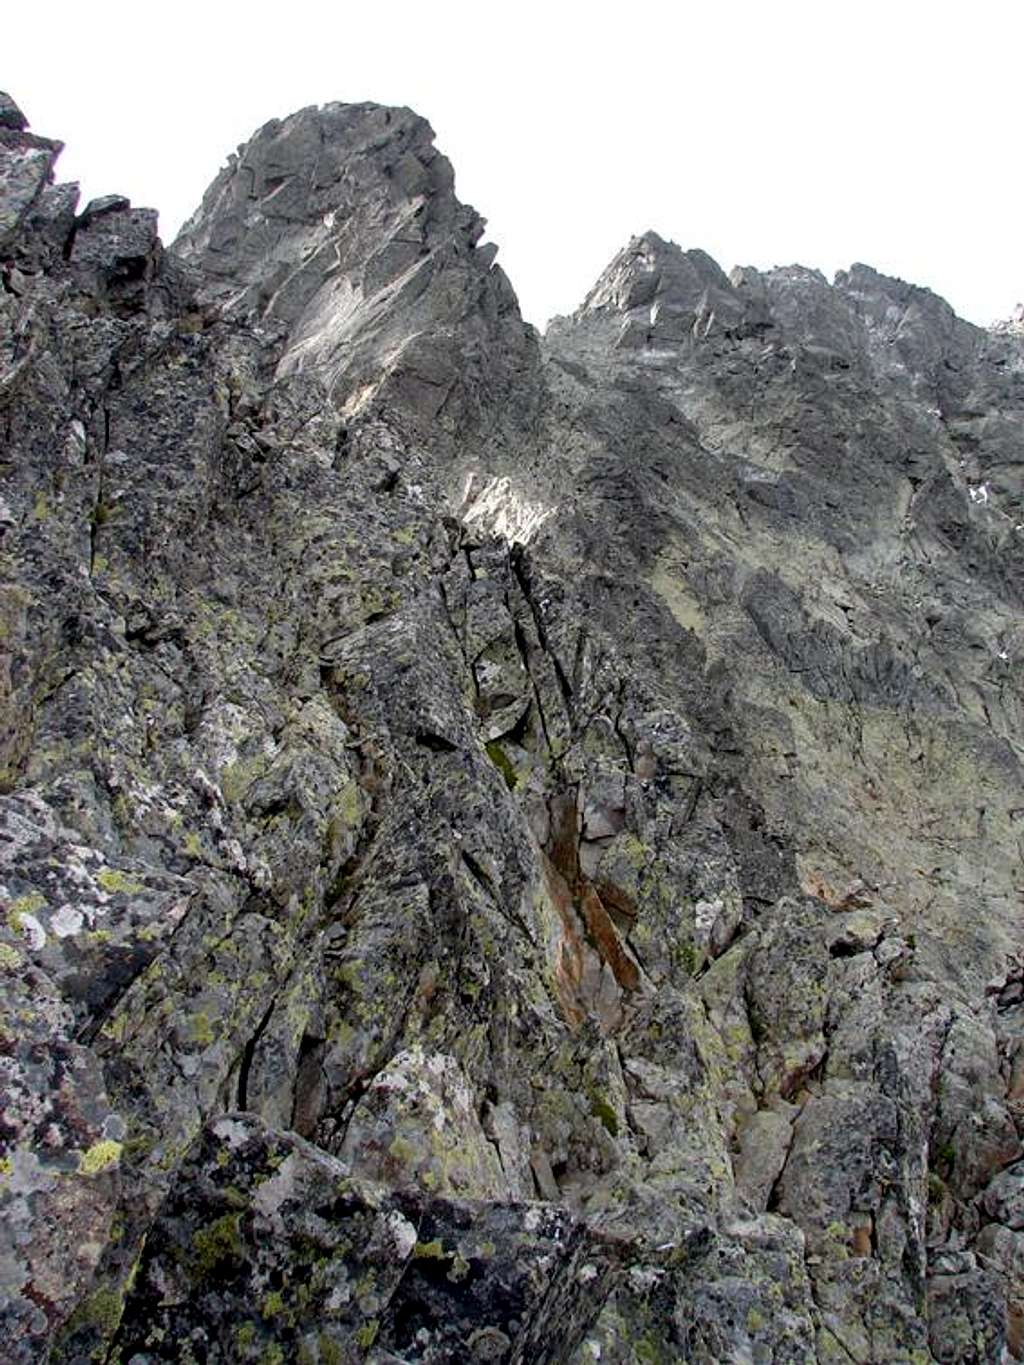 Entry to the ridge